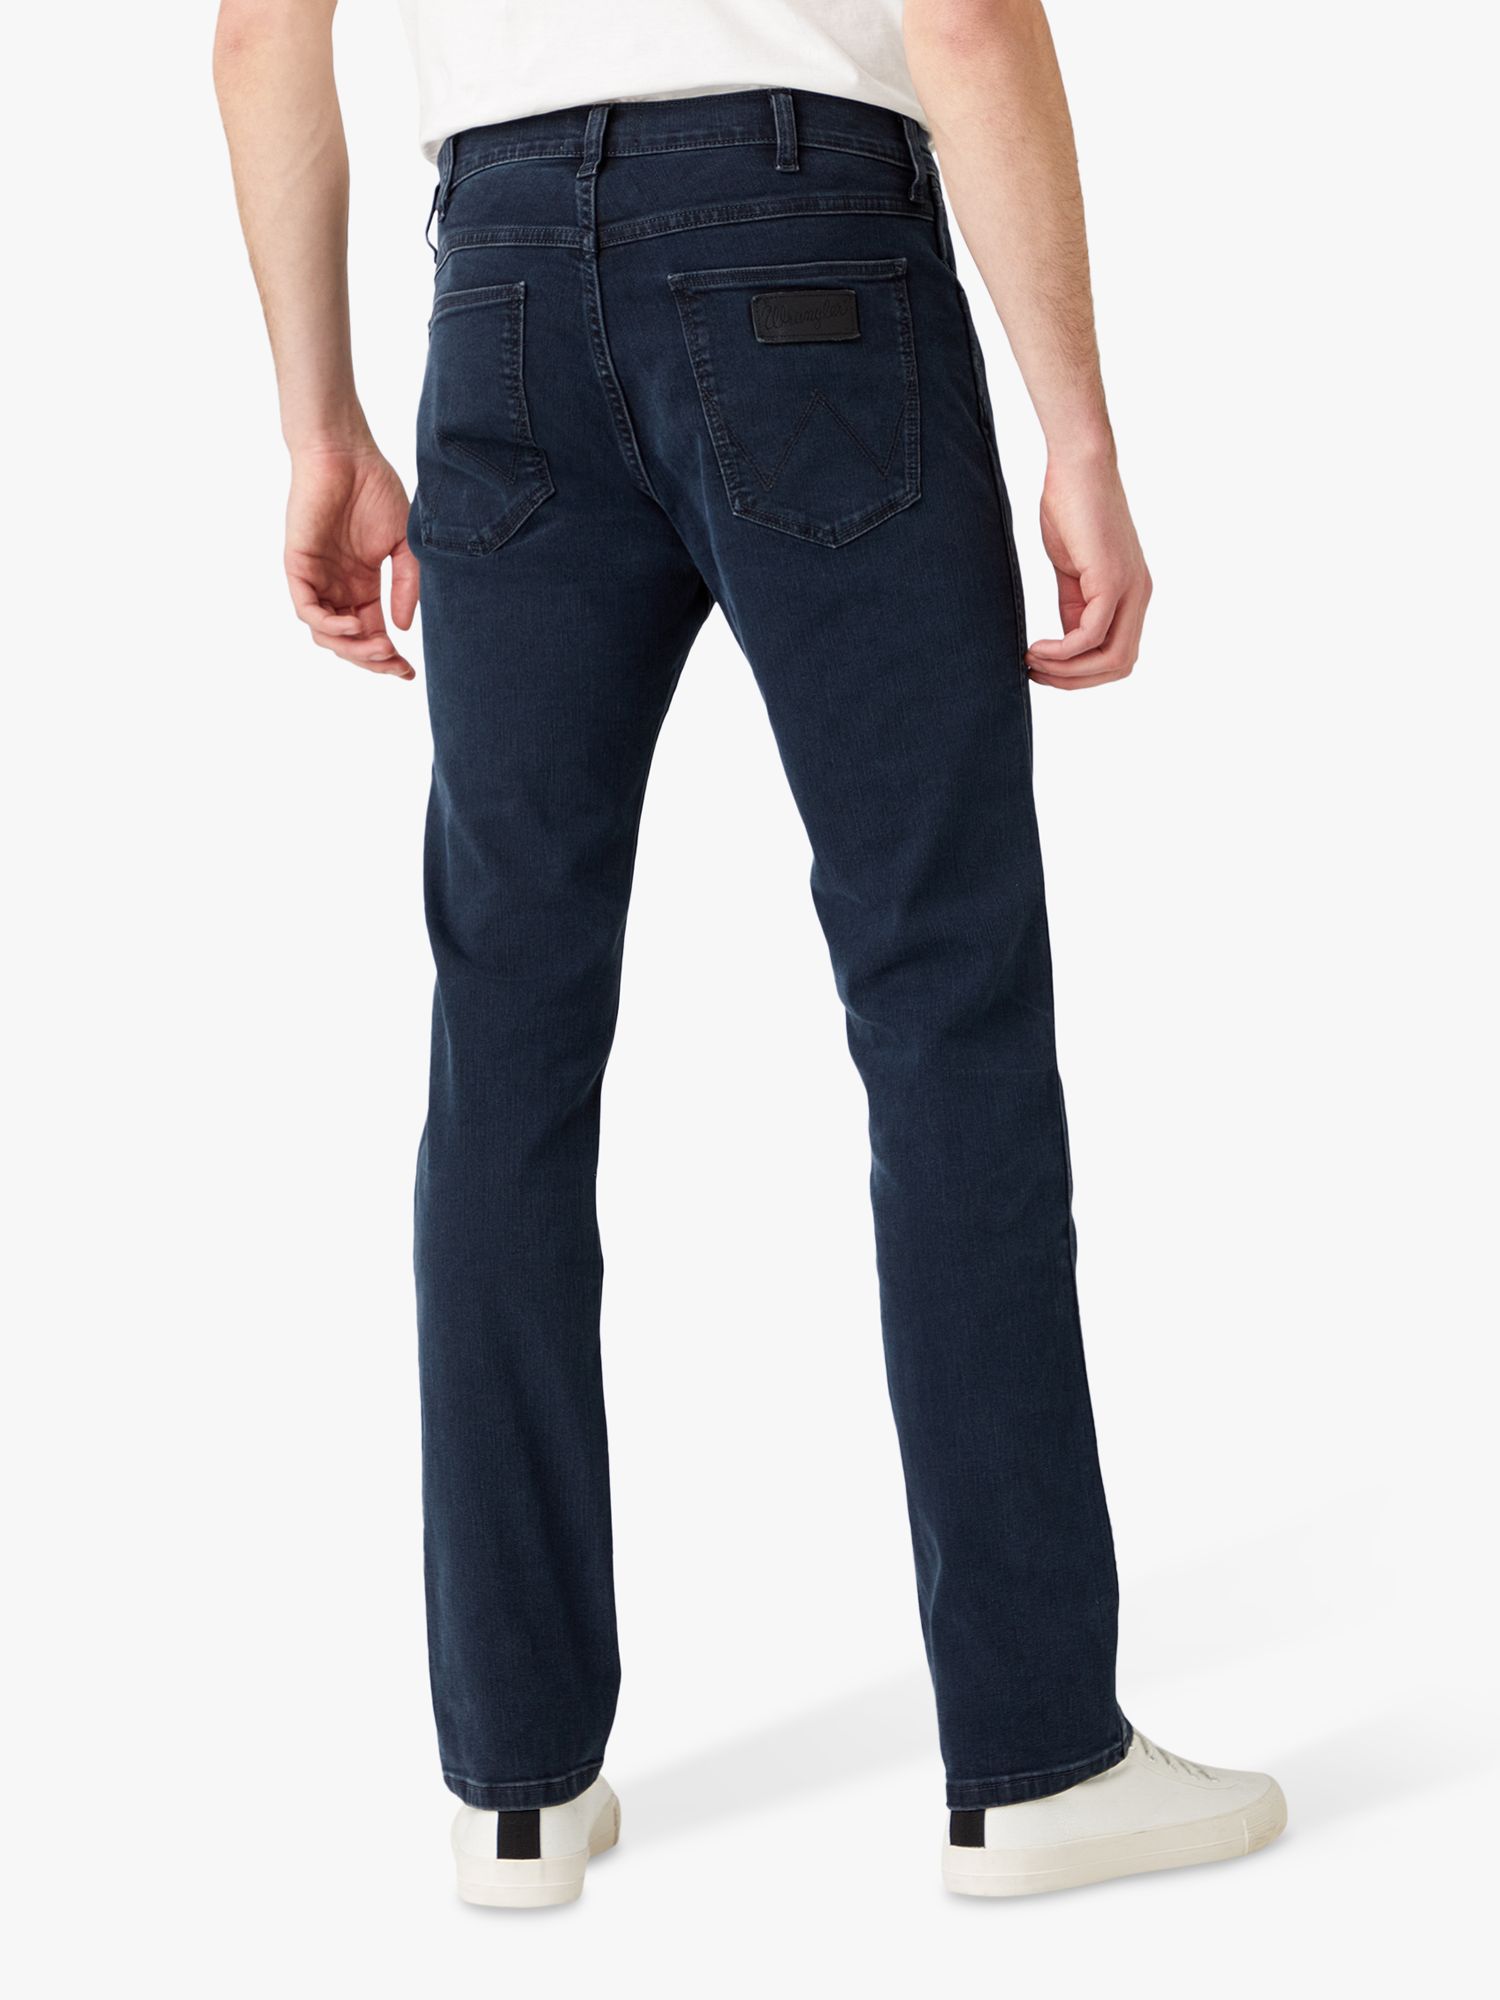 Wrangler Greensboro Slim Fit Denim Jeans, Blue at John Lewis & Partners